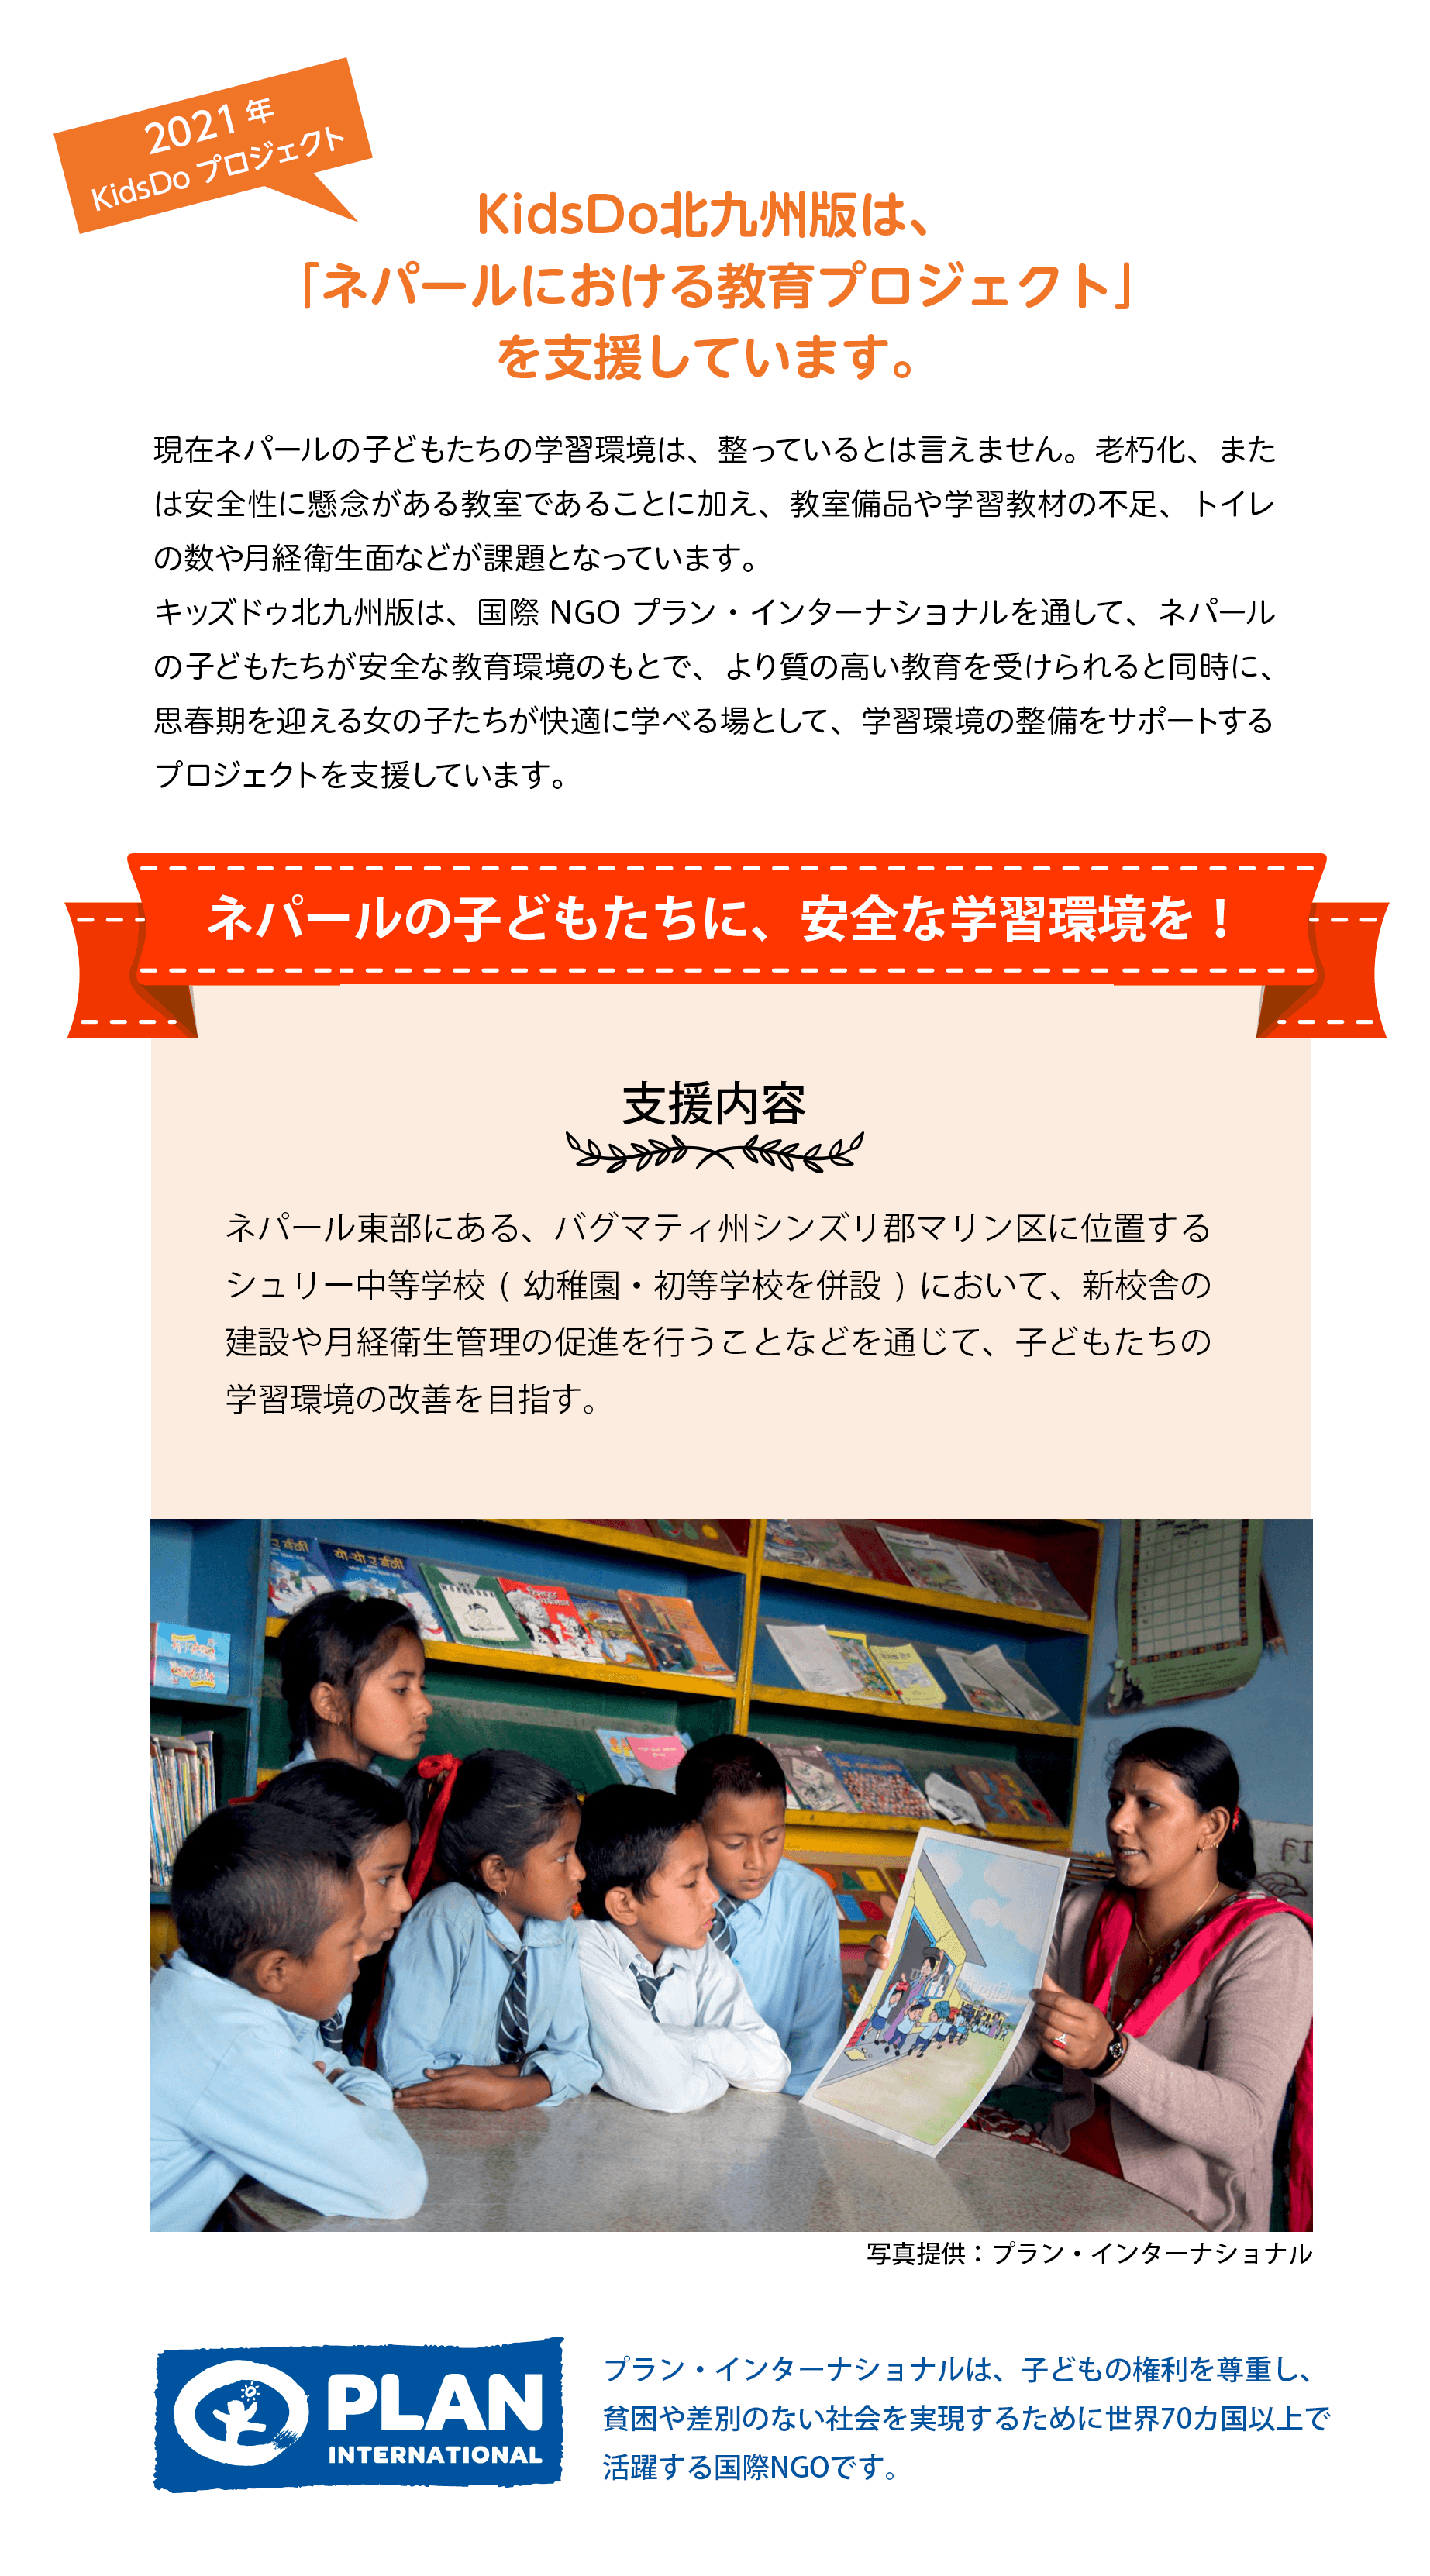 KidsDo北九州版は、「ネパールにおける教育プロジェクト」を支援しています。現在ネパールの子どもたちの学習環境は、整っているとは言えません。老朽化、または安全性に懸念がある教室であることに加え、教室備品や学習教材の不足、トイレ の数や月経衛生面などが課題となっています。 
キッズドゥ北九州版は、国際 NGO プラン・インターナショナルを通して、ネパールの子どもたちが安全な教育環境のもとで、より質の高い教育を受けられると同時に、 思春期を迎える女の子たちが快適に学べる場として、学習環境の整備をサポートする プロジェクトを支援しています。ネパールの子どもたちに、安全な学習環境を！支援内容 ネパール東部にある、バグマティ州シンズリ郡マリン区に位置する シュリー中等学校(幼稚園・初等学校を併設)において、新校舎の 建設や月経衛生管理の促進を行うことなどを通じて、子どもたちの 学習環境の改善を目指す。 プラン・インターナショナルは、子どもの権利を尊重し、貧困や差別のない社会を実現するために世界70カ国以上で活躍する国際NGOです。 
